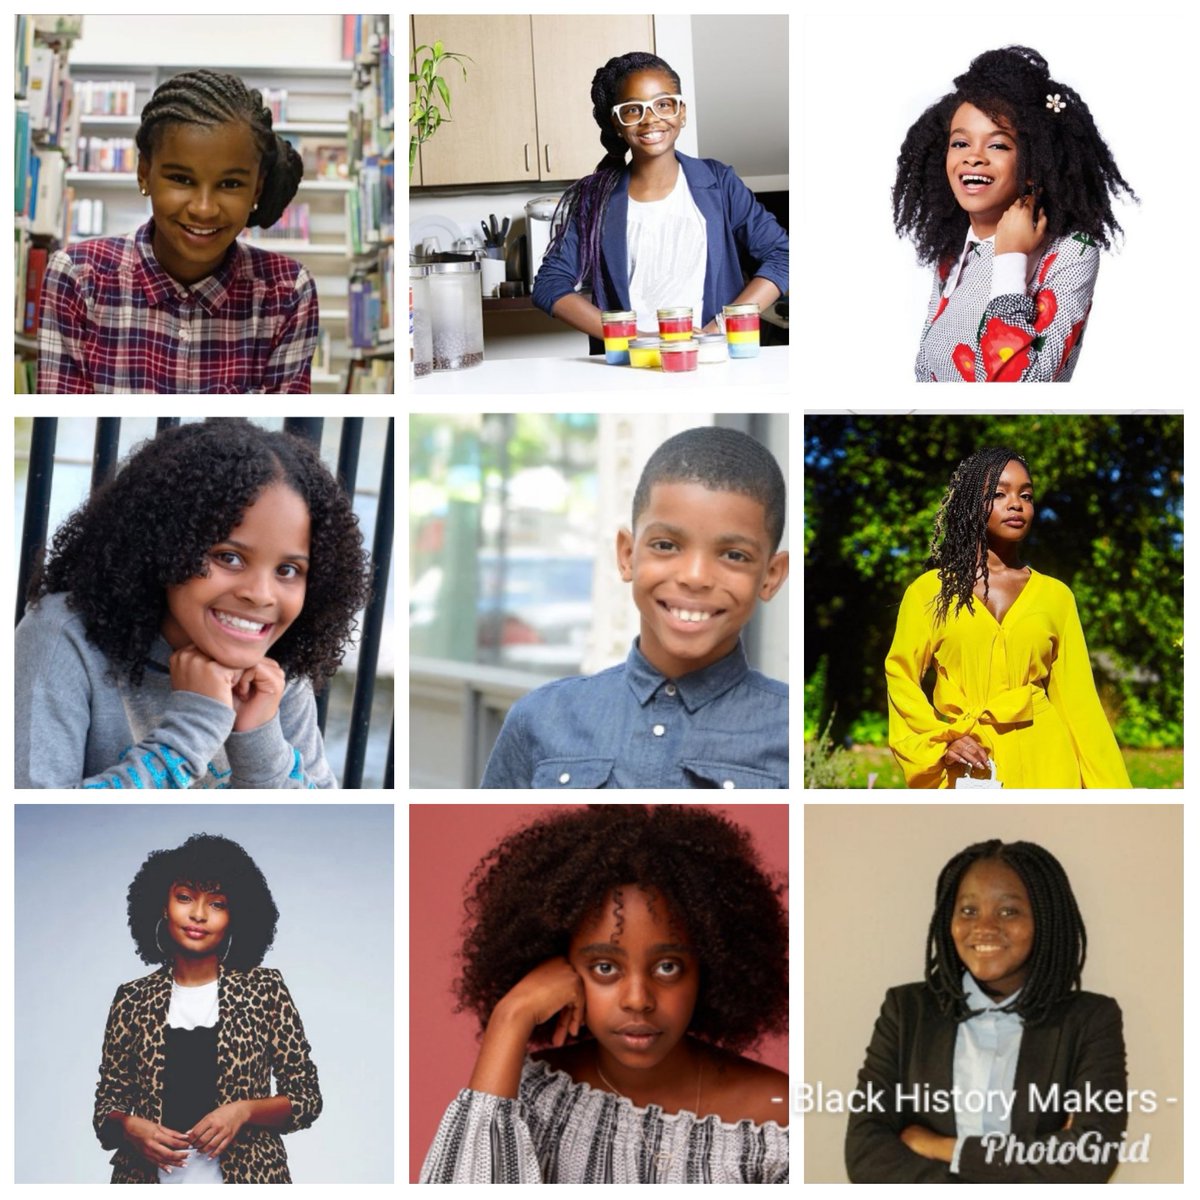 First Full Week of Black History Month!  Celebrating My Innovative & Change Making Role Models that Motivate Me Every Day!  @iammarleydias @superbinezgirl @mayasideas @LittleMissFlint @_ProjectIAM @marsaimartin @YaraShahidi @NaomiWadler @natashamwansa01